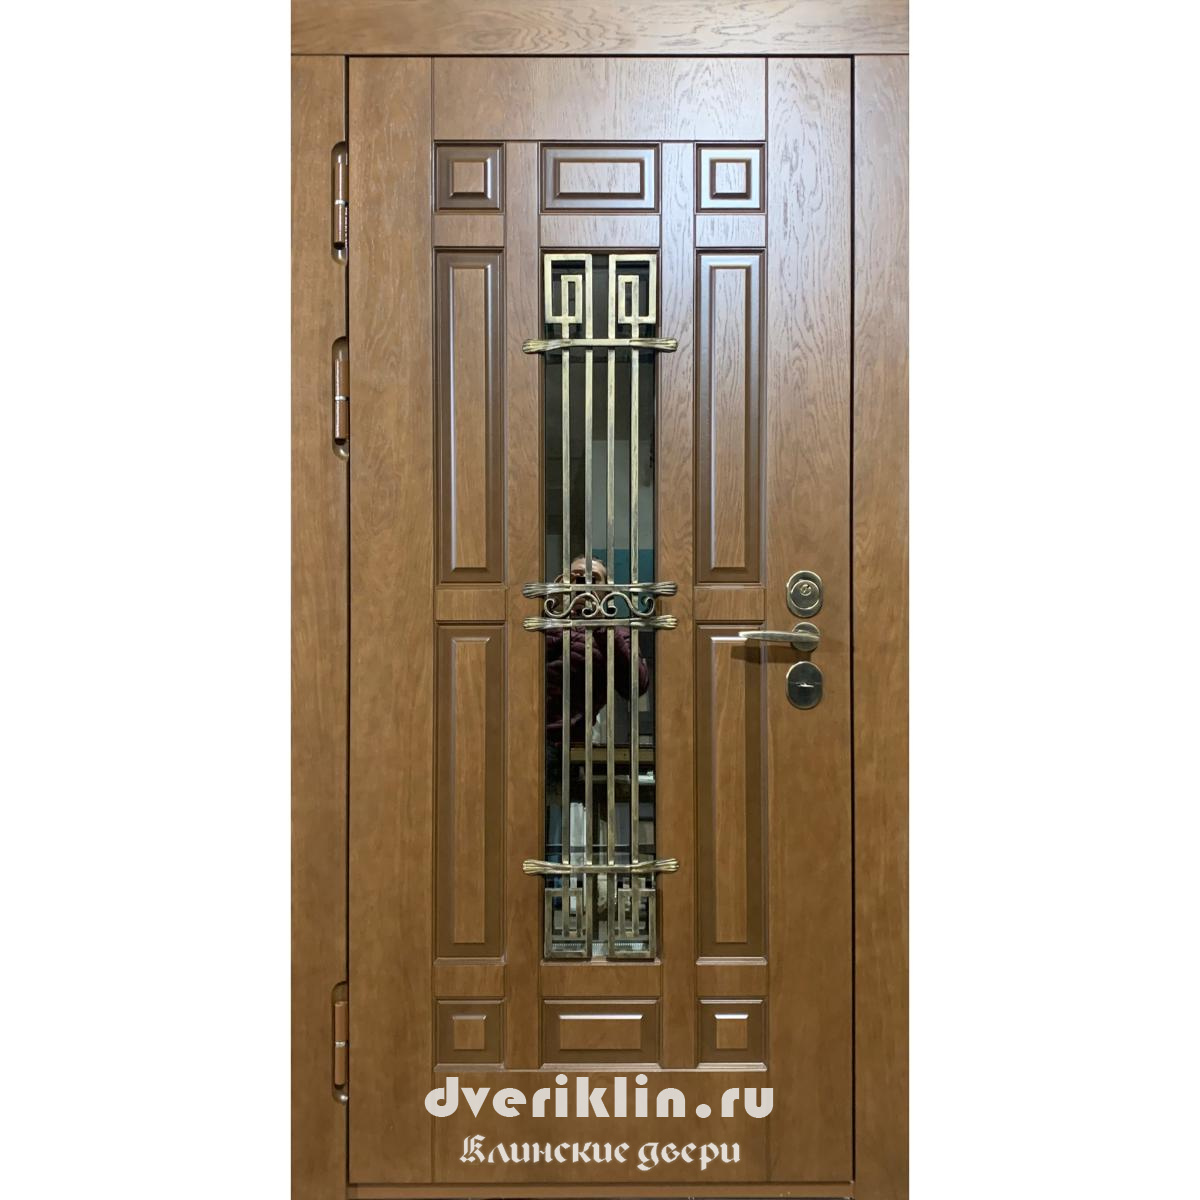 Дверь в коттедж MKD-18 (В коттедж)